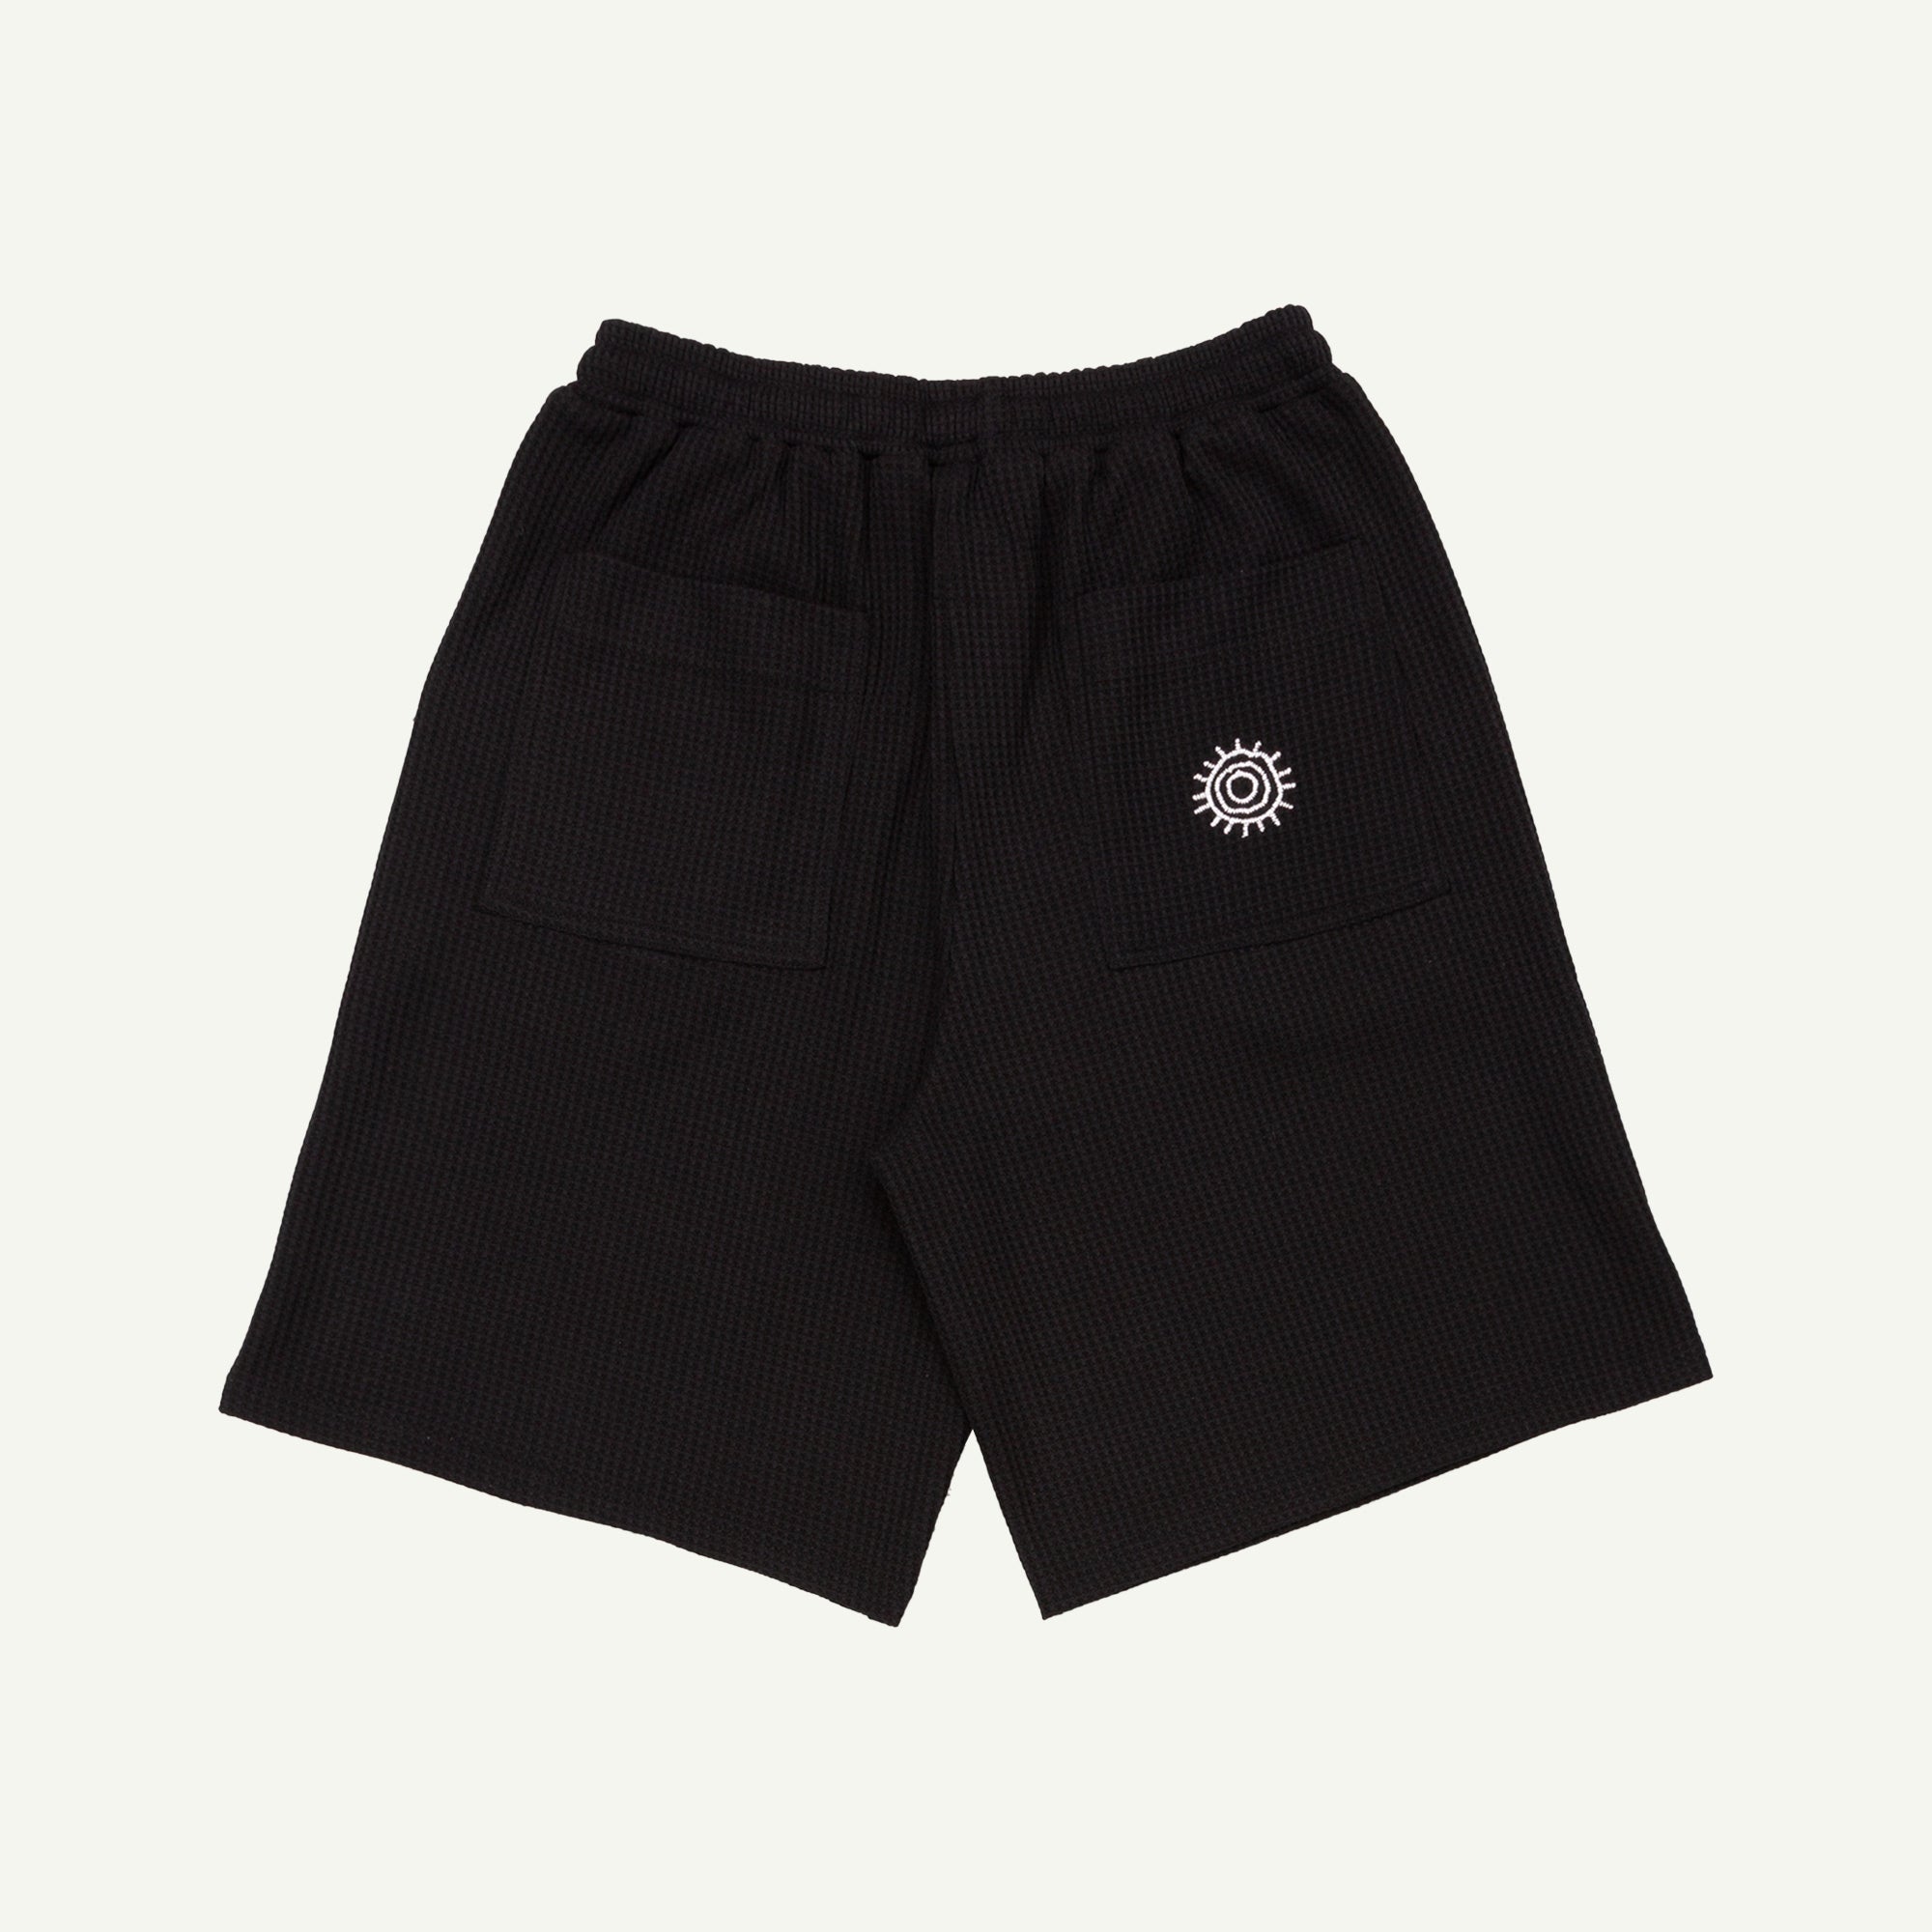 Heresy Black Sungod Shorts